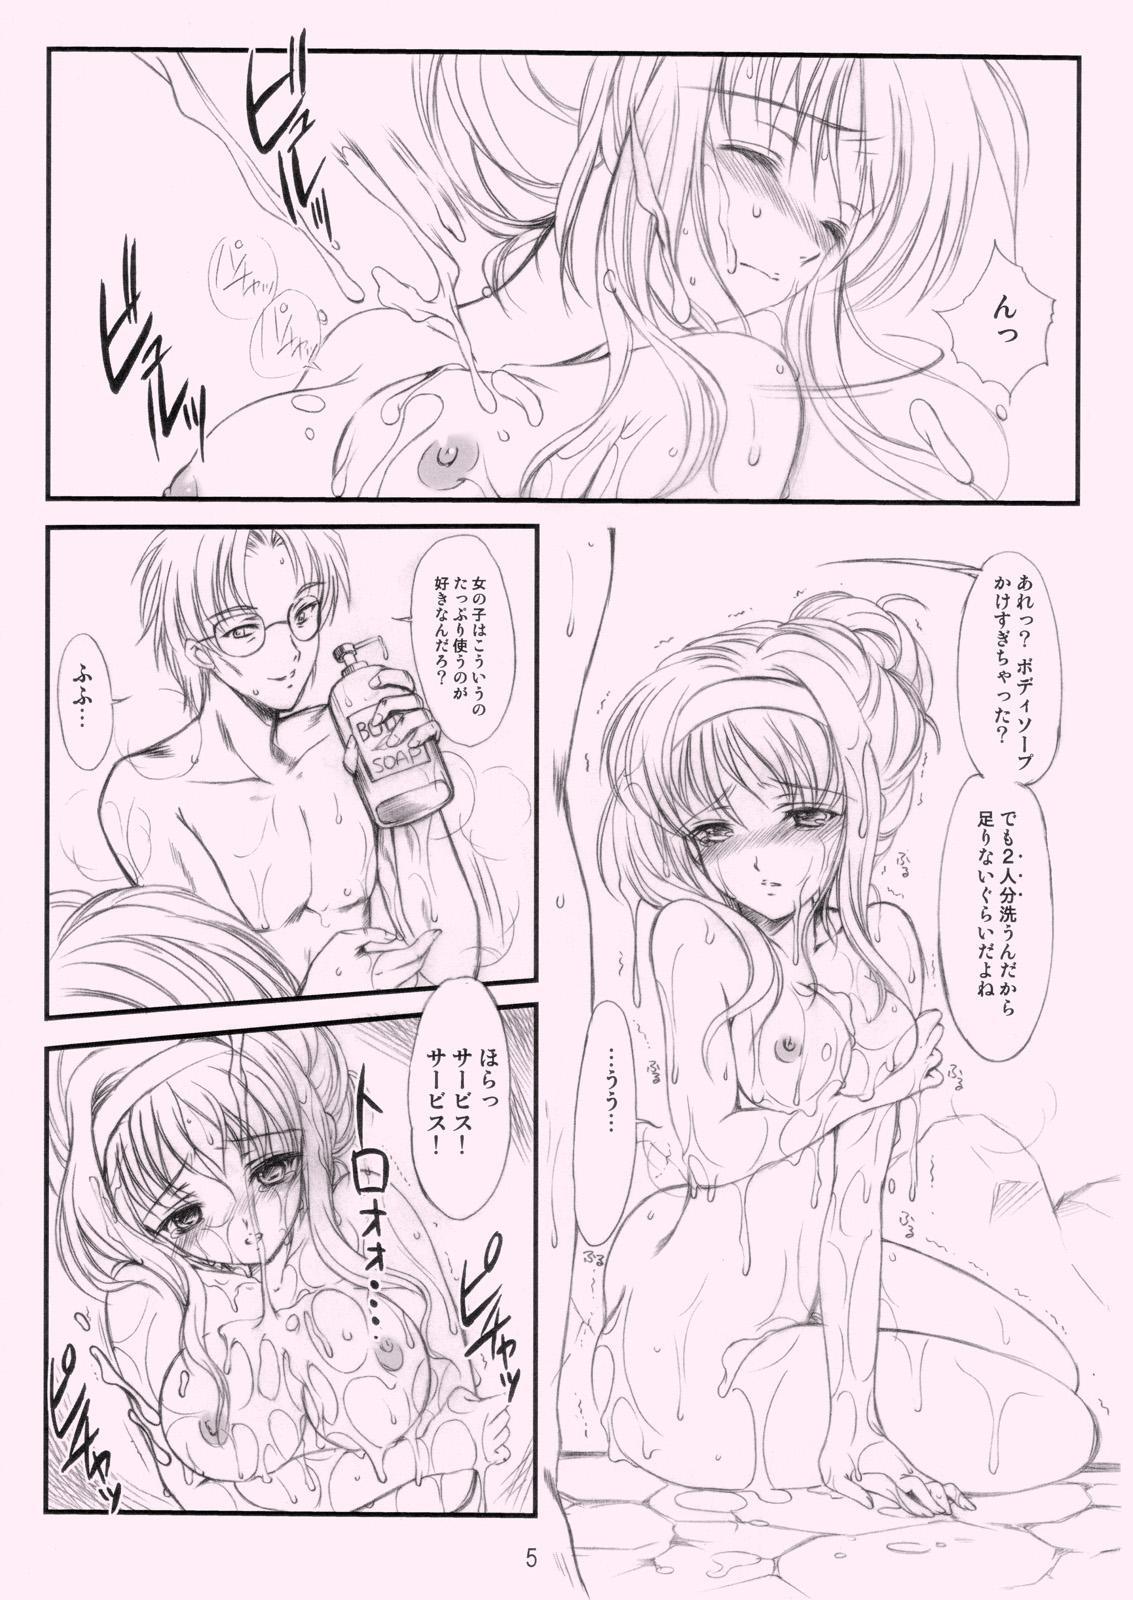 Tight Ass Shiori Gaiden Ii Tabi Yume Kibun SCENE 2 - Tokimeki memorial Erotic - Page 4